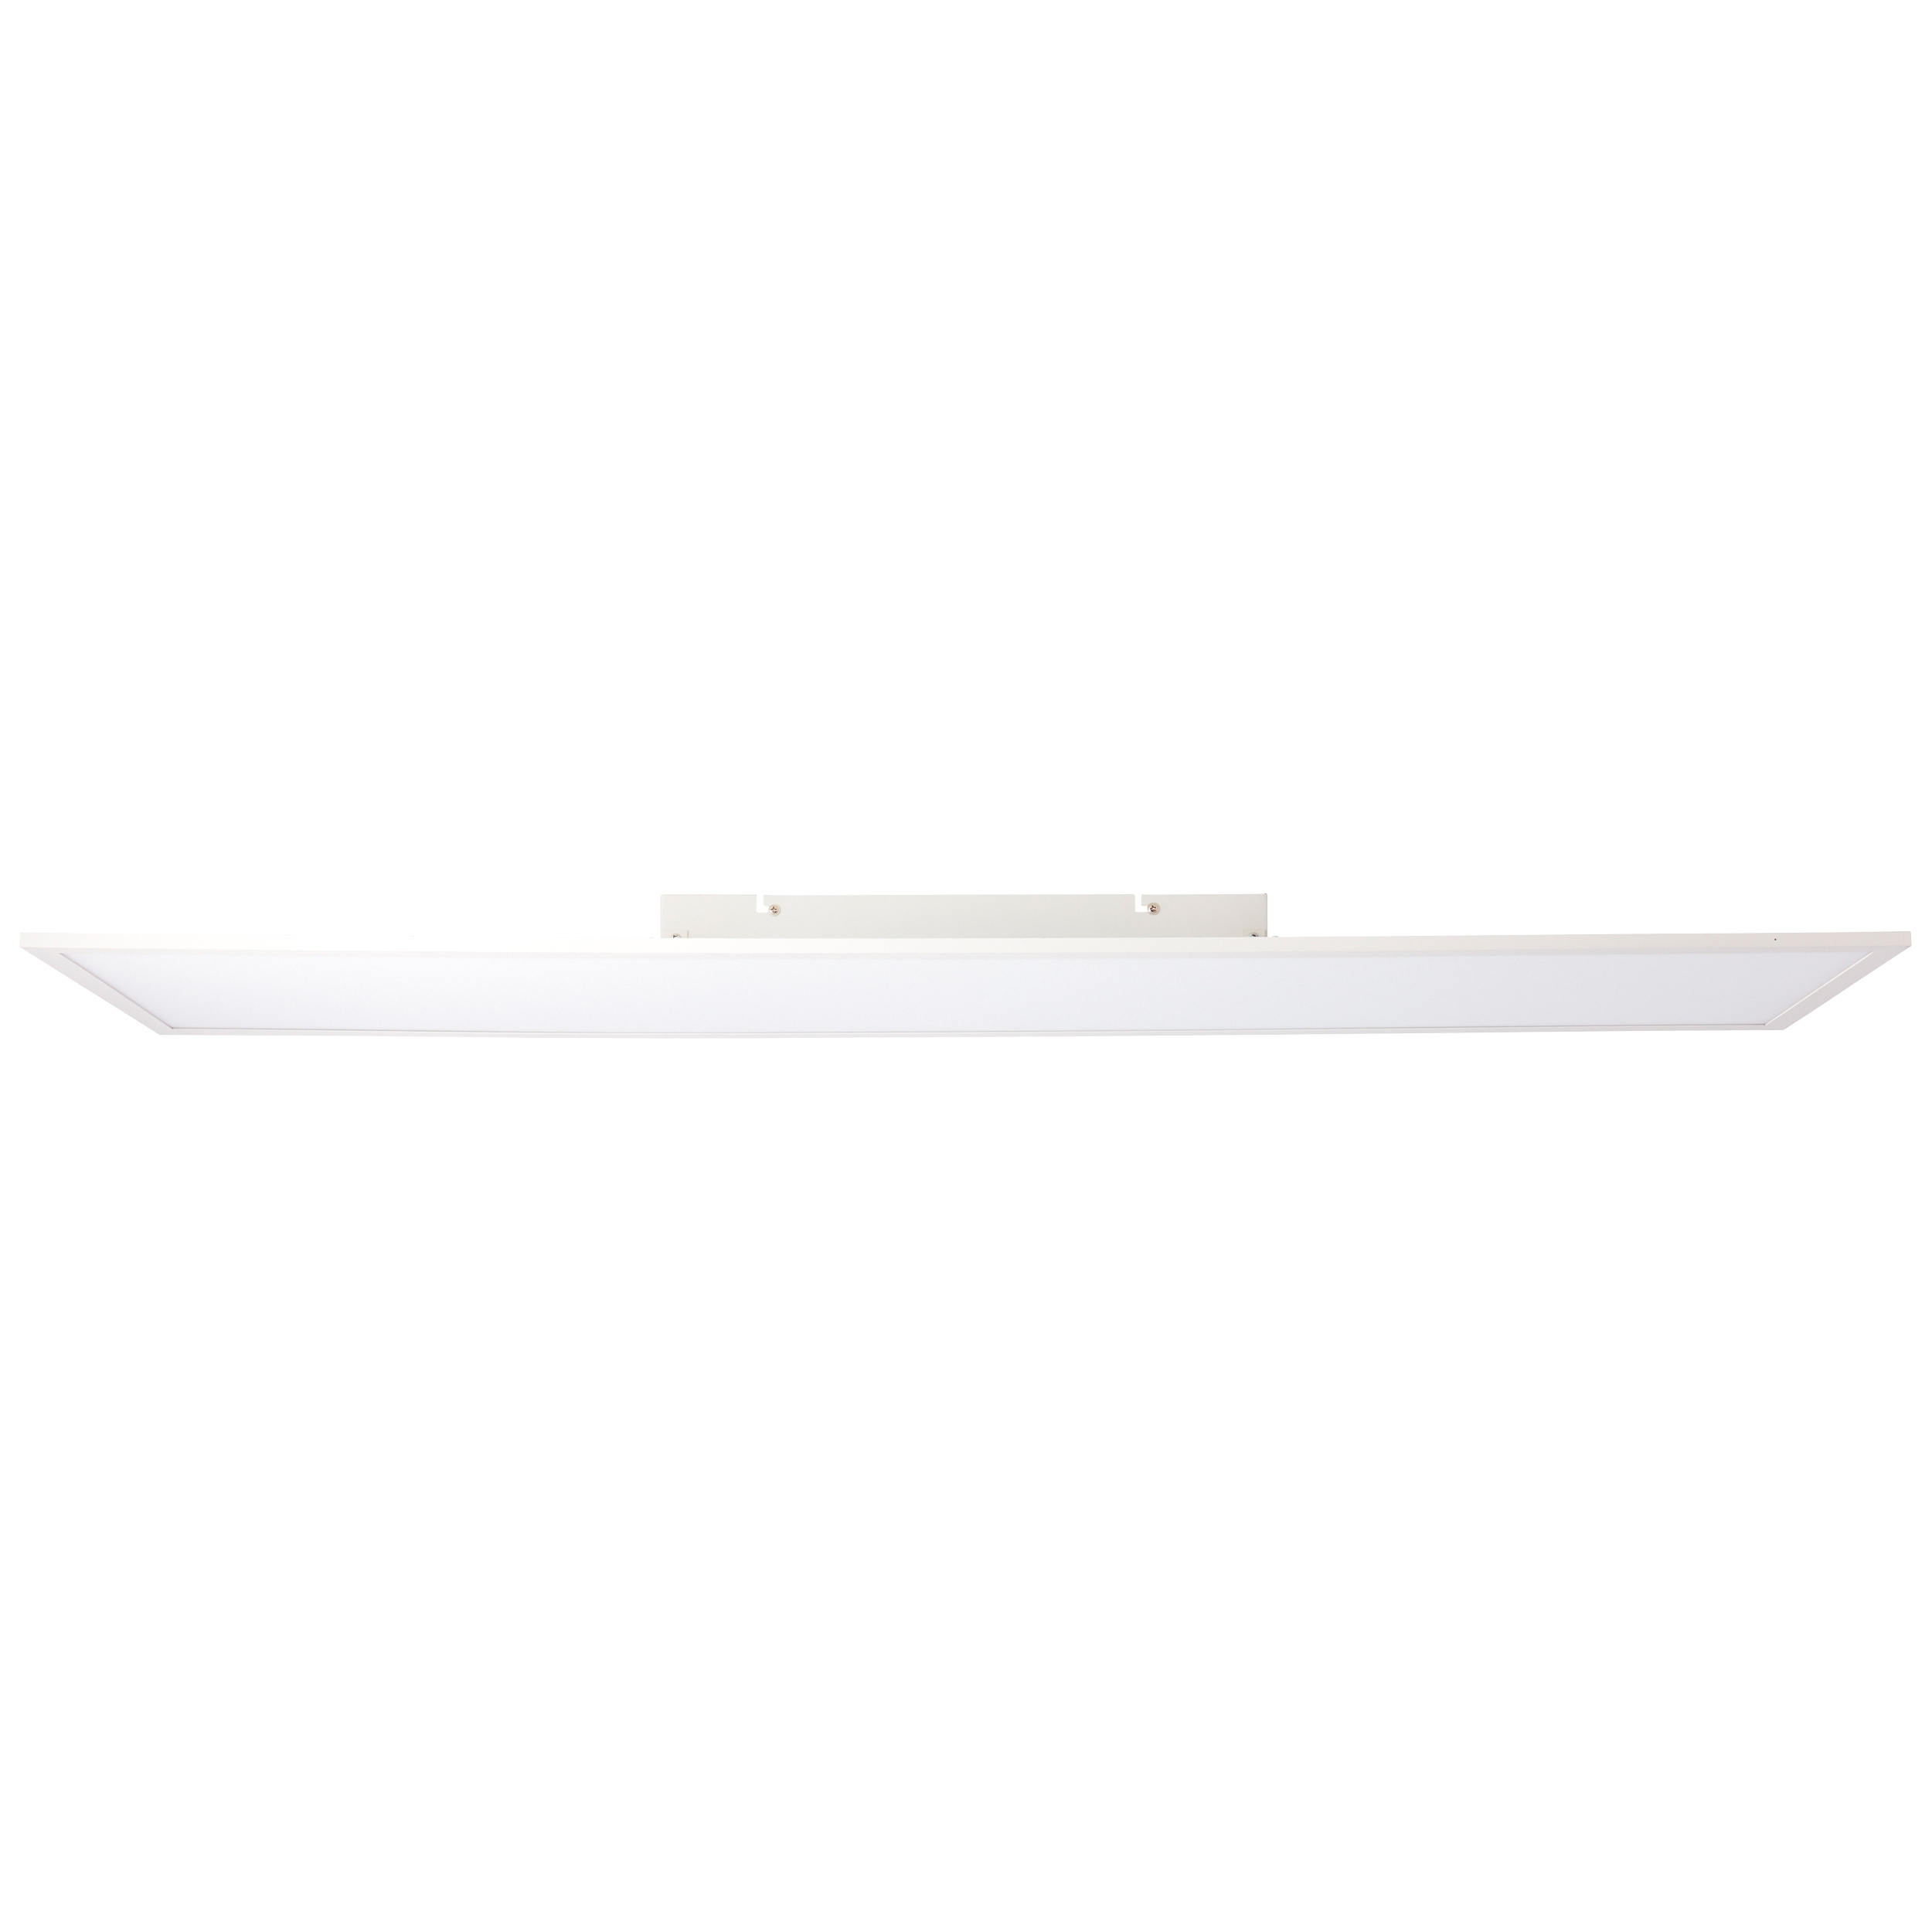 Buffi LED Deckenaufbau-Paneel 120x30cm weiß | G90359A05